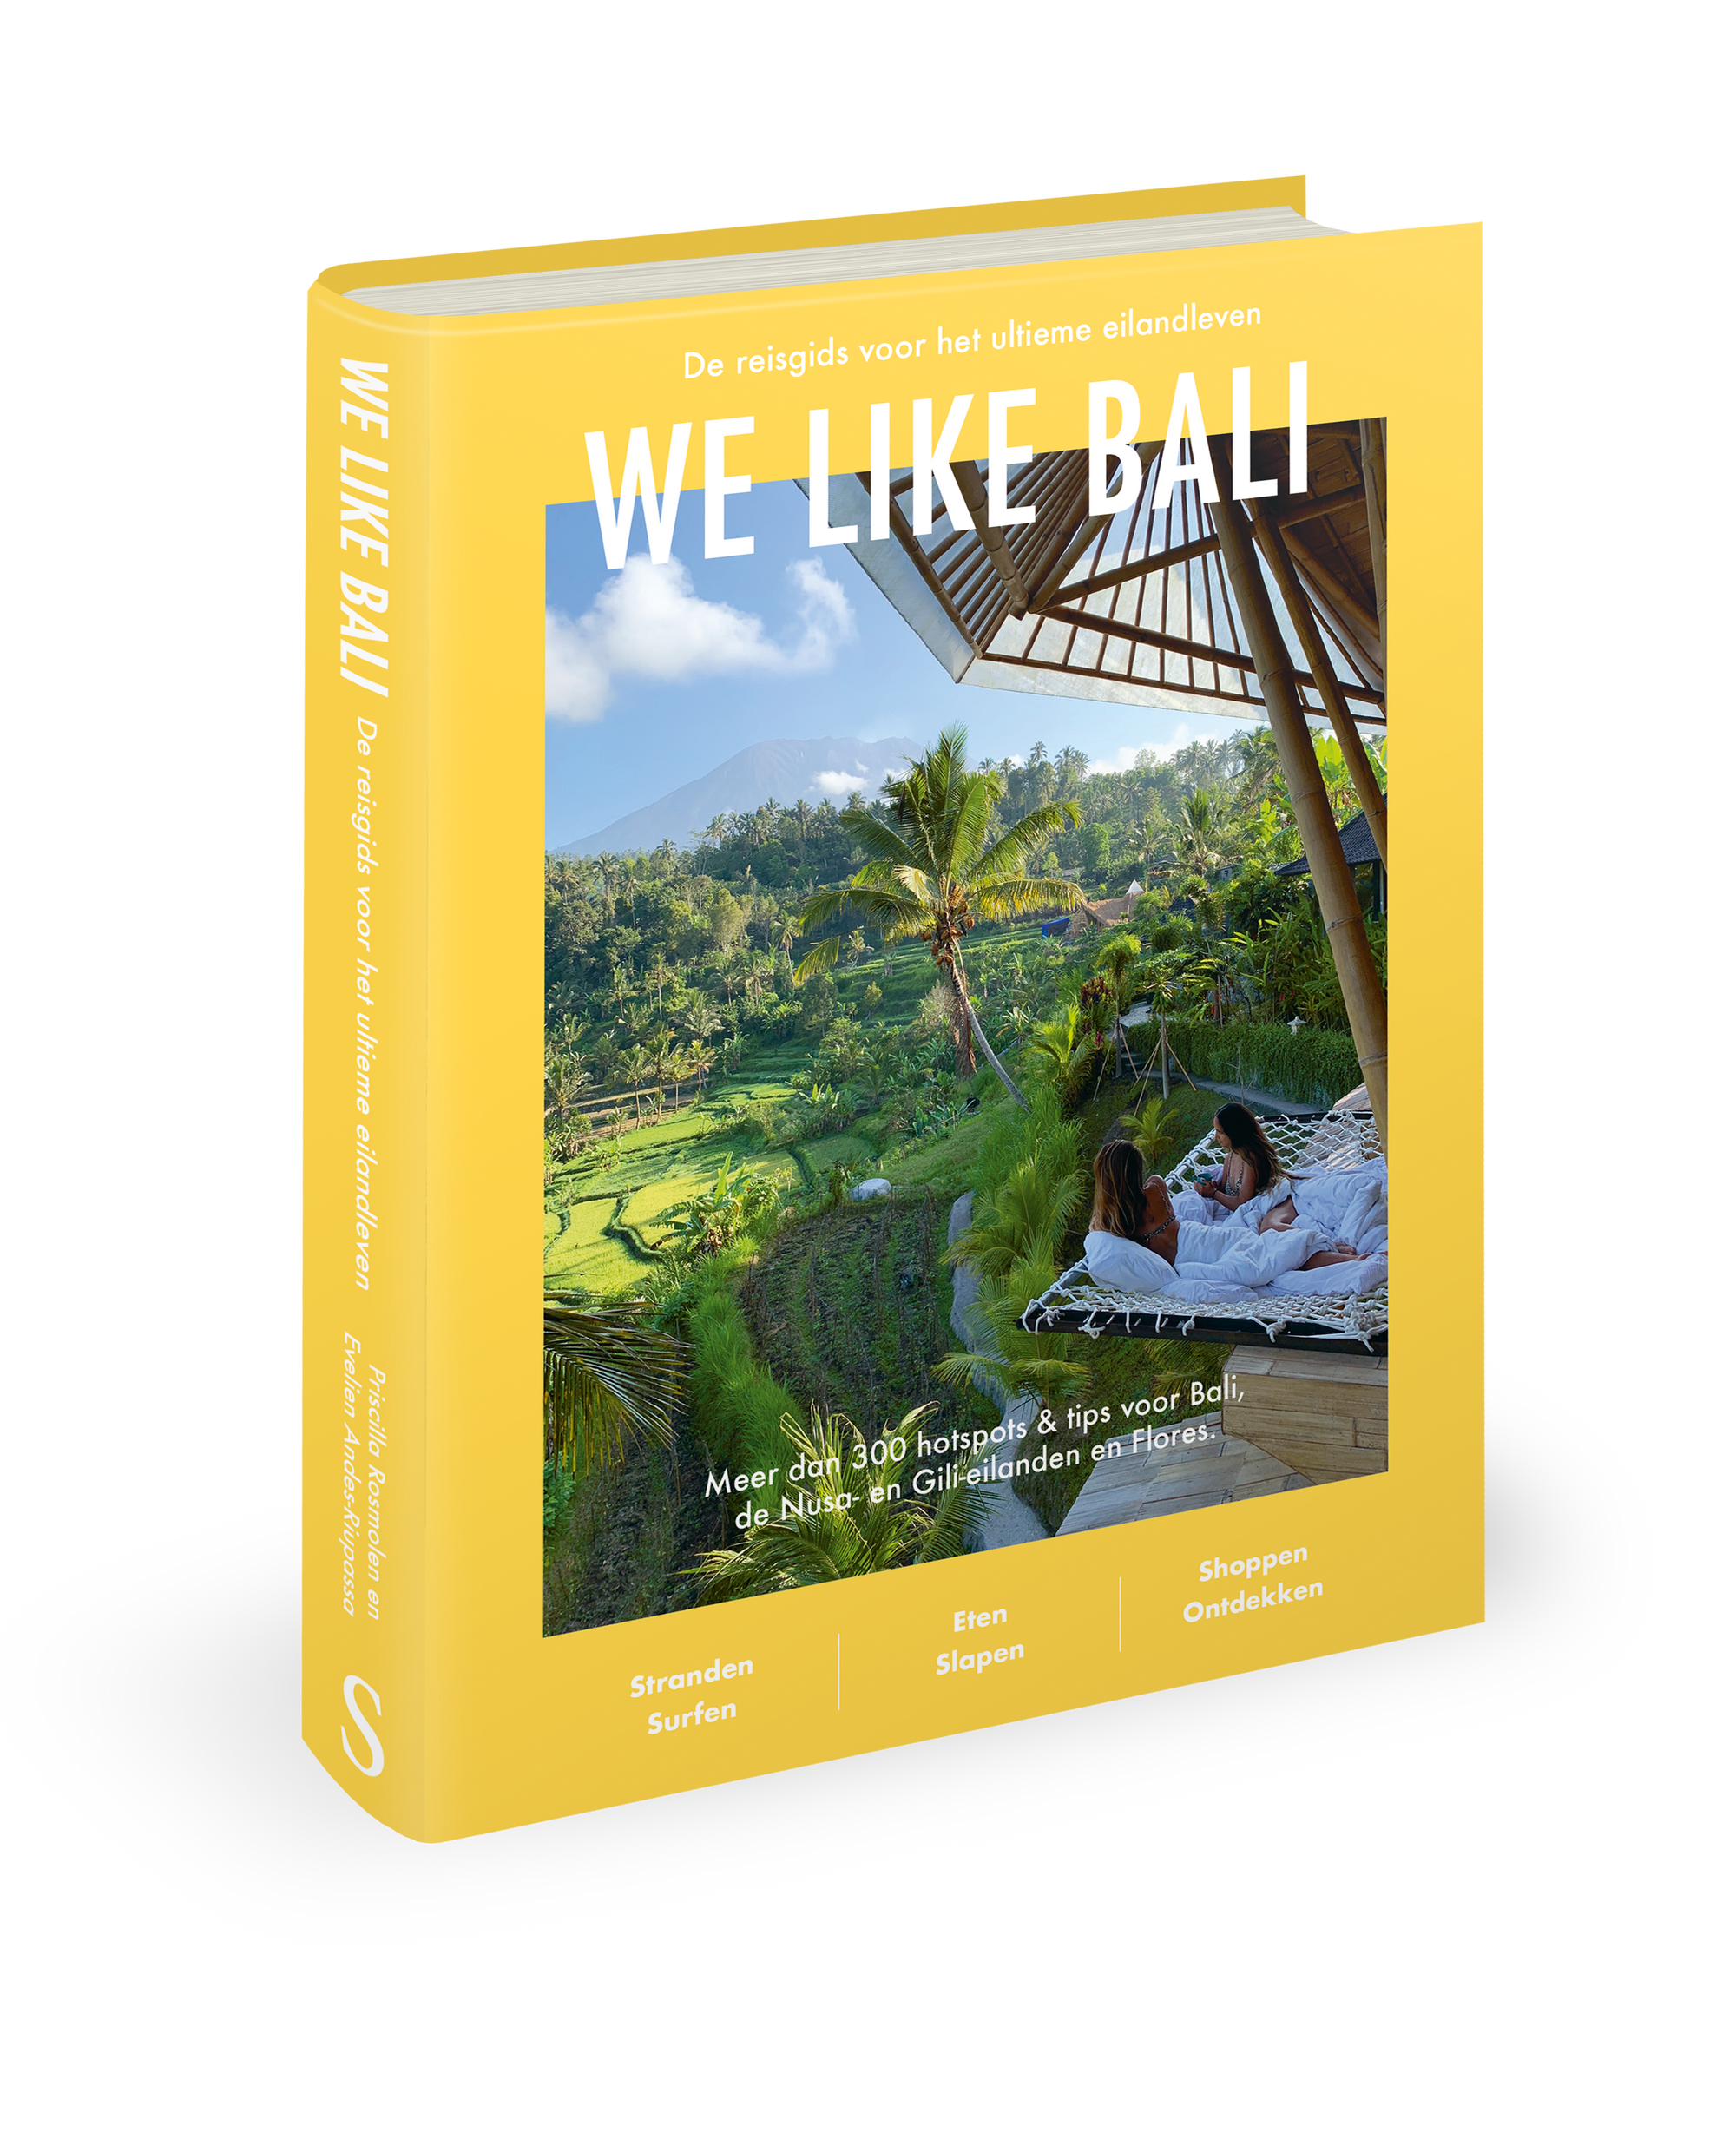 NIEUWE editie We Like Bali reisgids lanceert 1 maart!